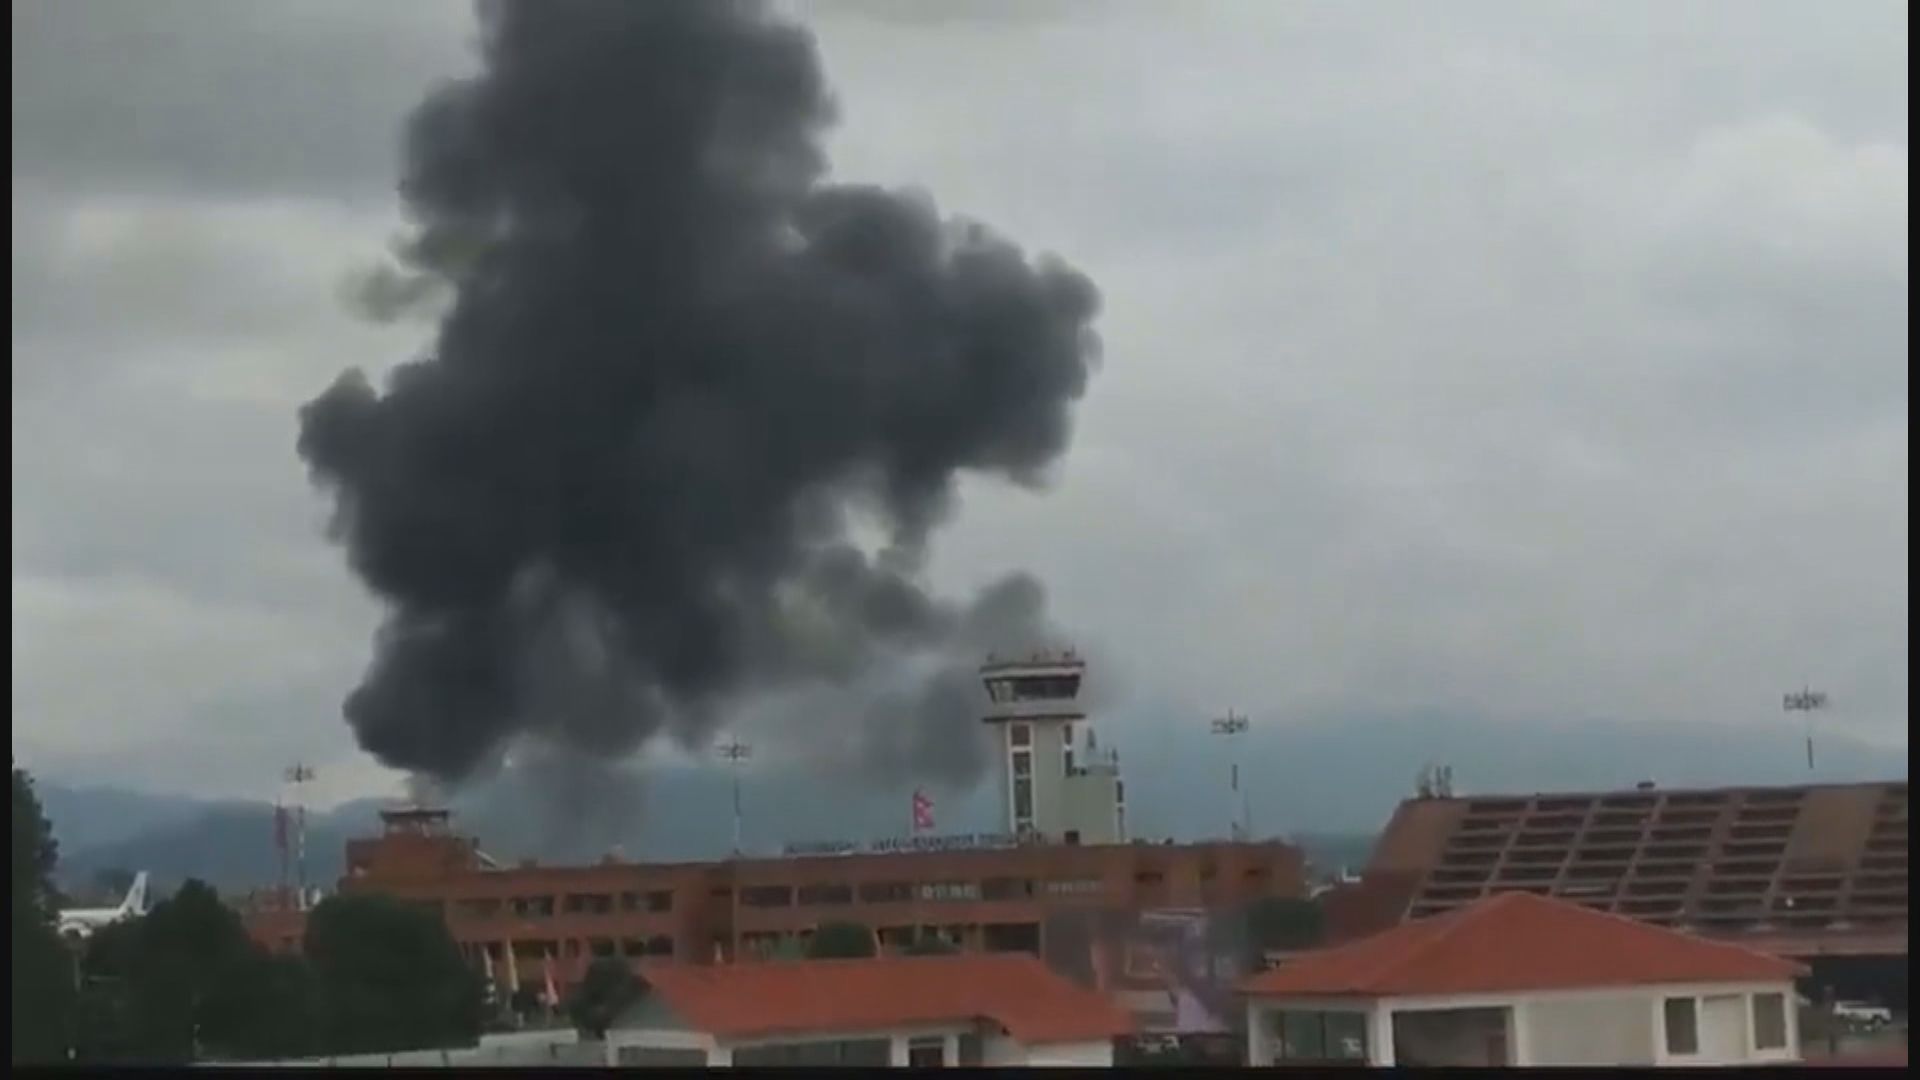 尼泊爾有飛機從首都機場起飛時衝出跑道起火致22死